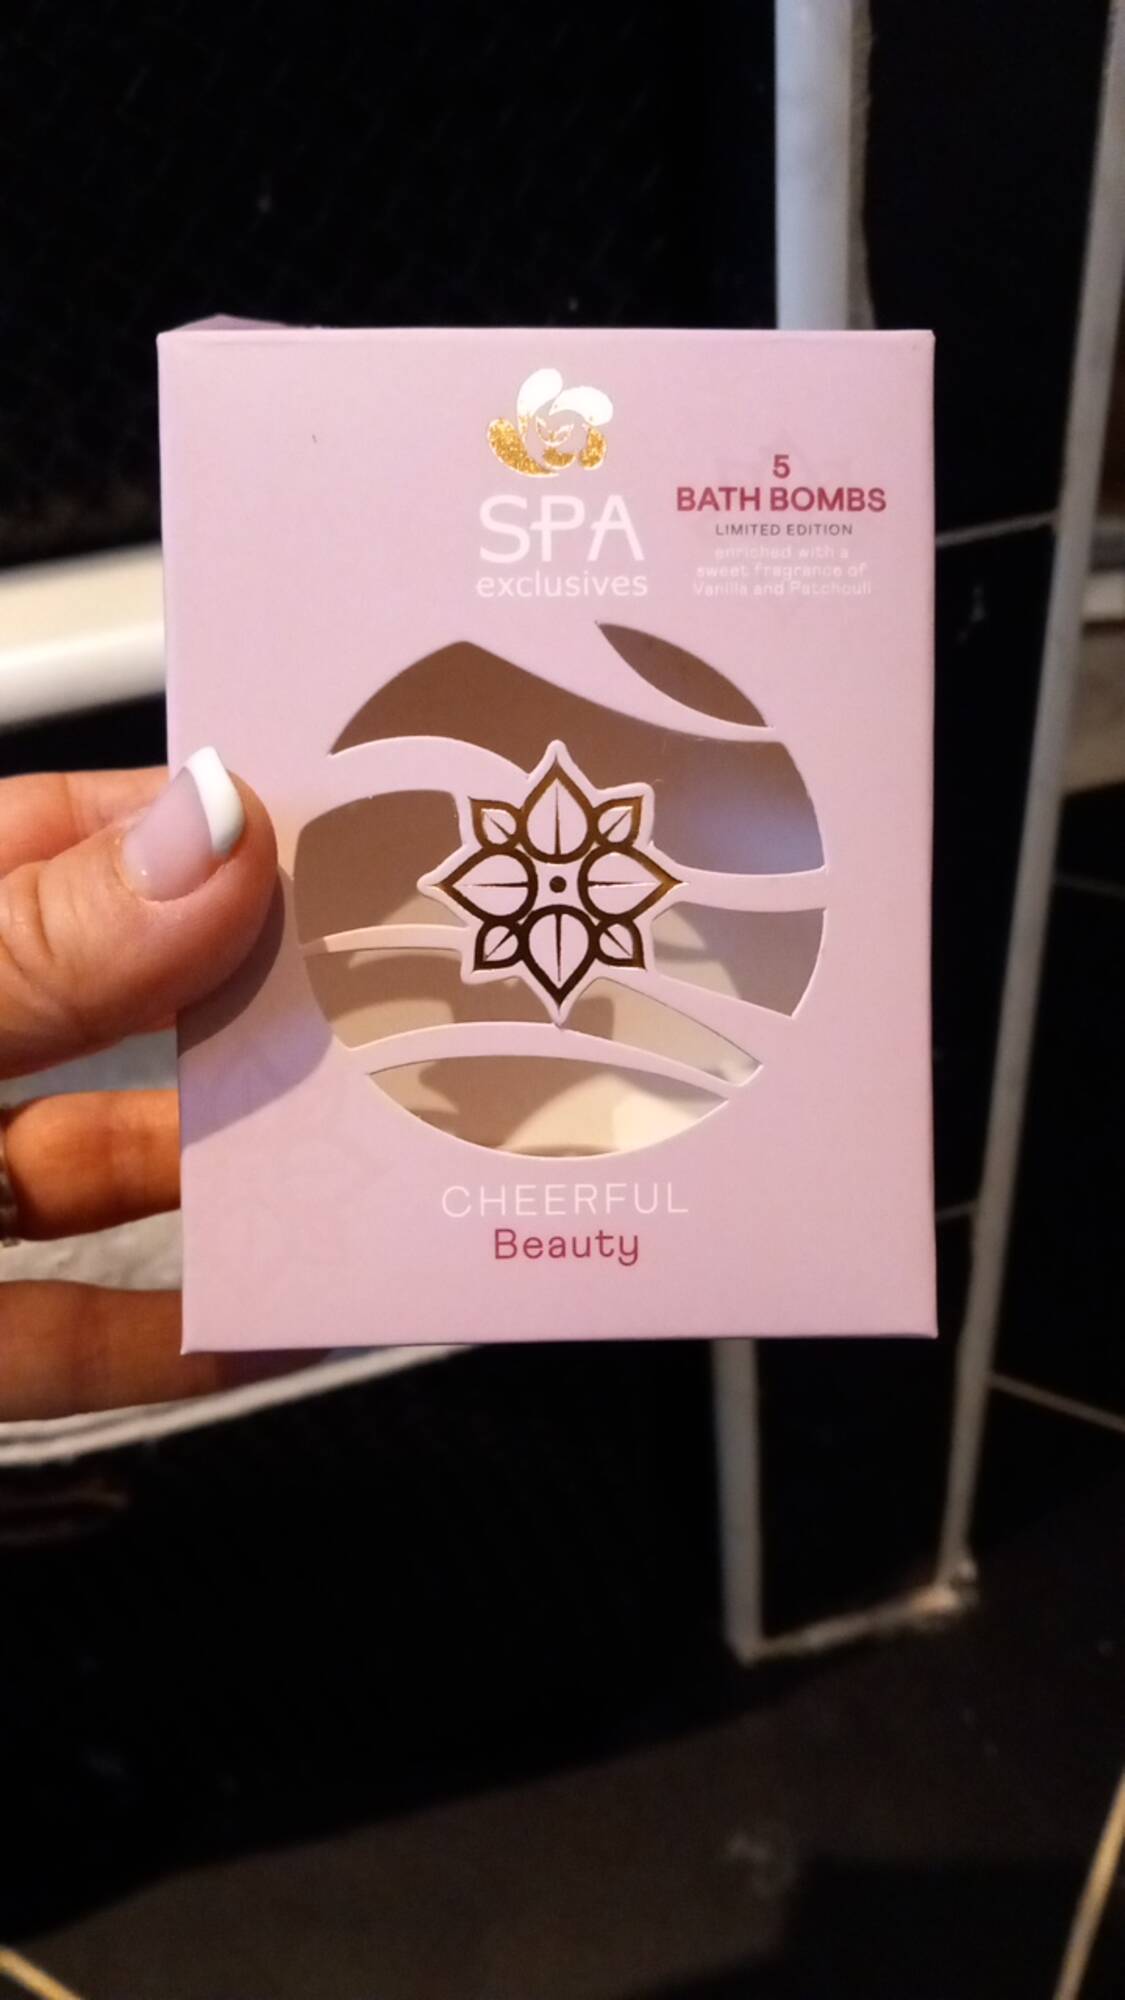 SPA EXCLUSIVES - 5 Bath bombs parfum de vanille et patchouli